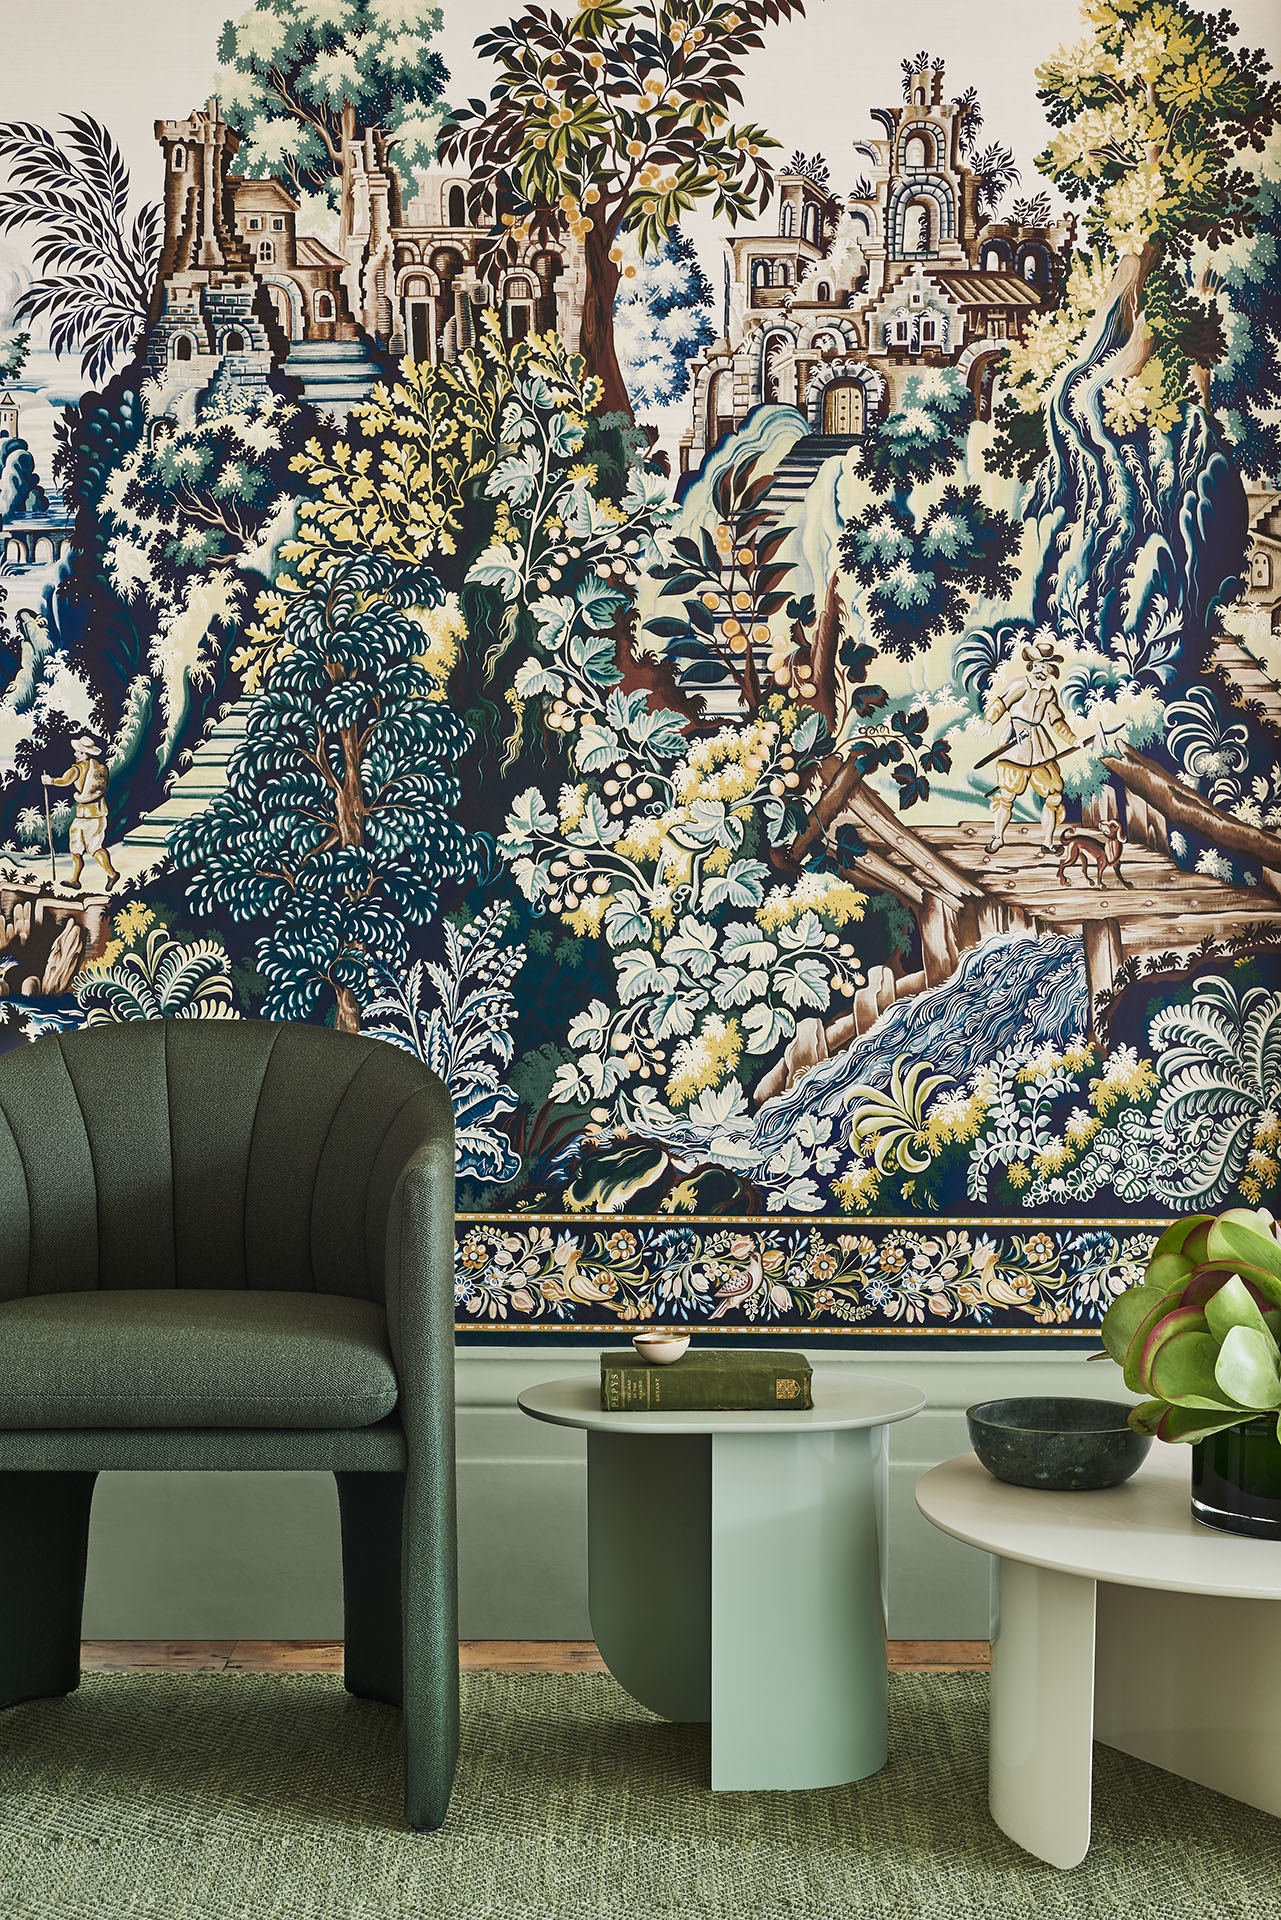 A Verdure Tapestry megalkotását egy 17. századi falikárpit ihlette, mely ma is megtekinthető a Kensington Palotában. A részletgazdag, csodás színekben pompázó minta a kollekció legkülönlegesebb eleme, mely panelként és egyedi, selyem falikárpit változatban is elérhető.  